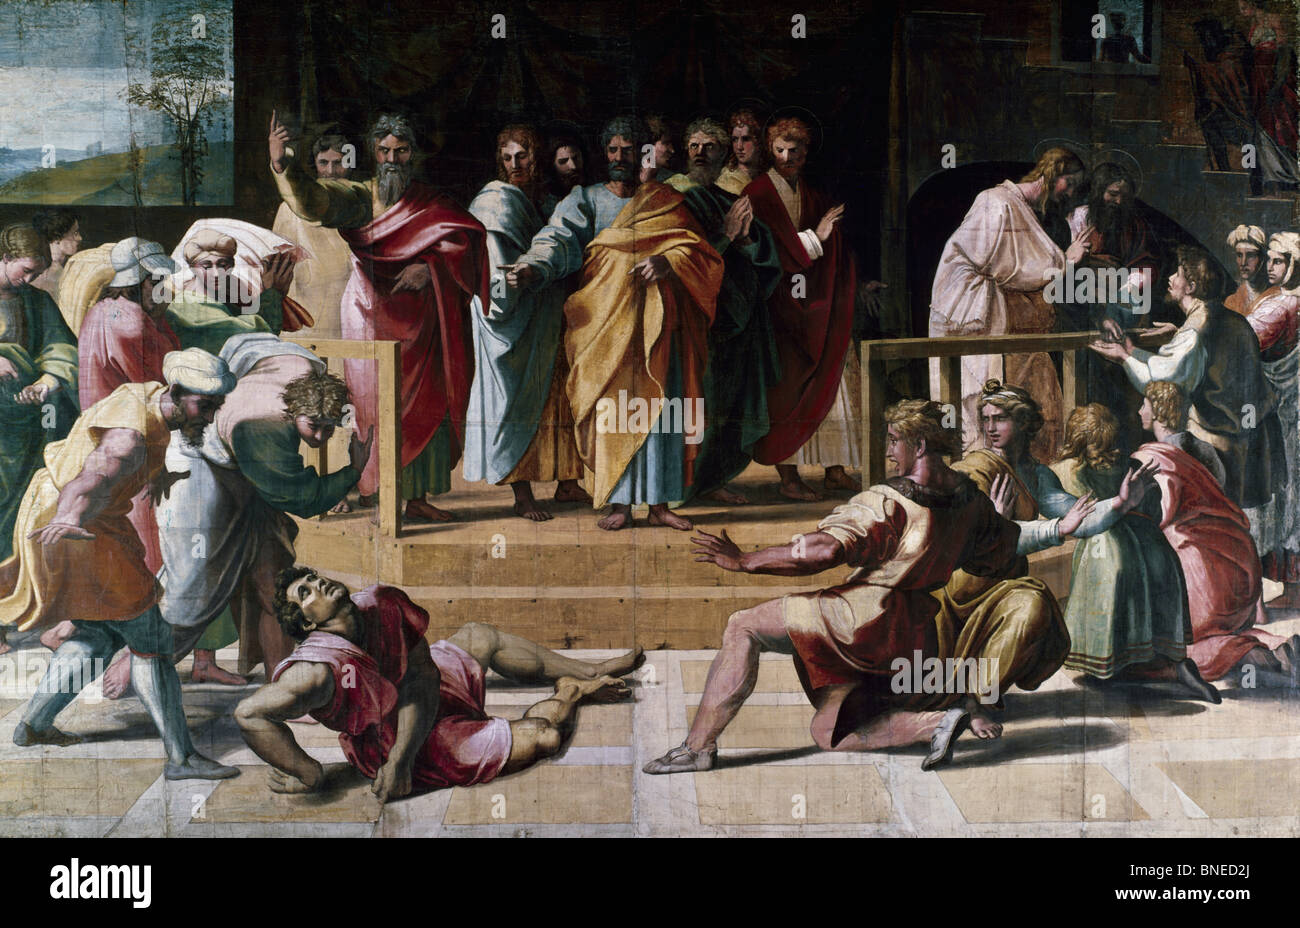 La morte di Anania, 1515-16, Raphael (1483-1520/italiano), olio su tela, Victoria & Albert Museum di Londra, Inghilterra Foto Stock